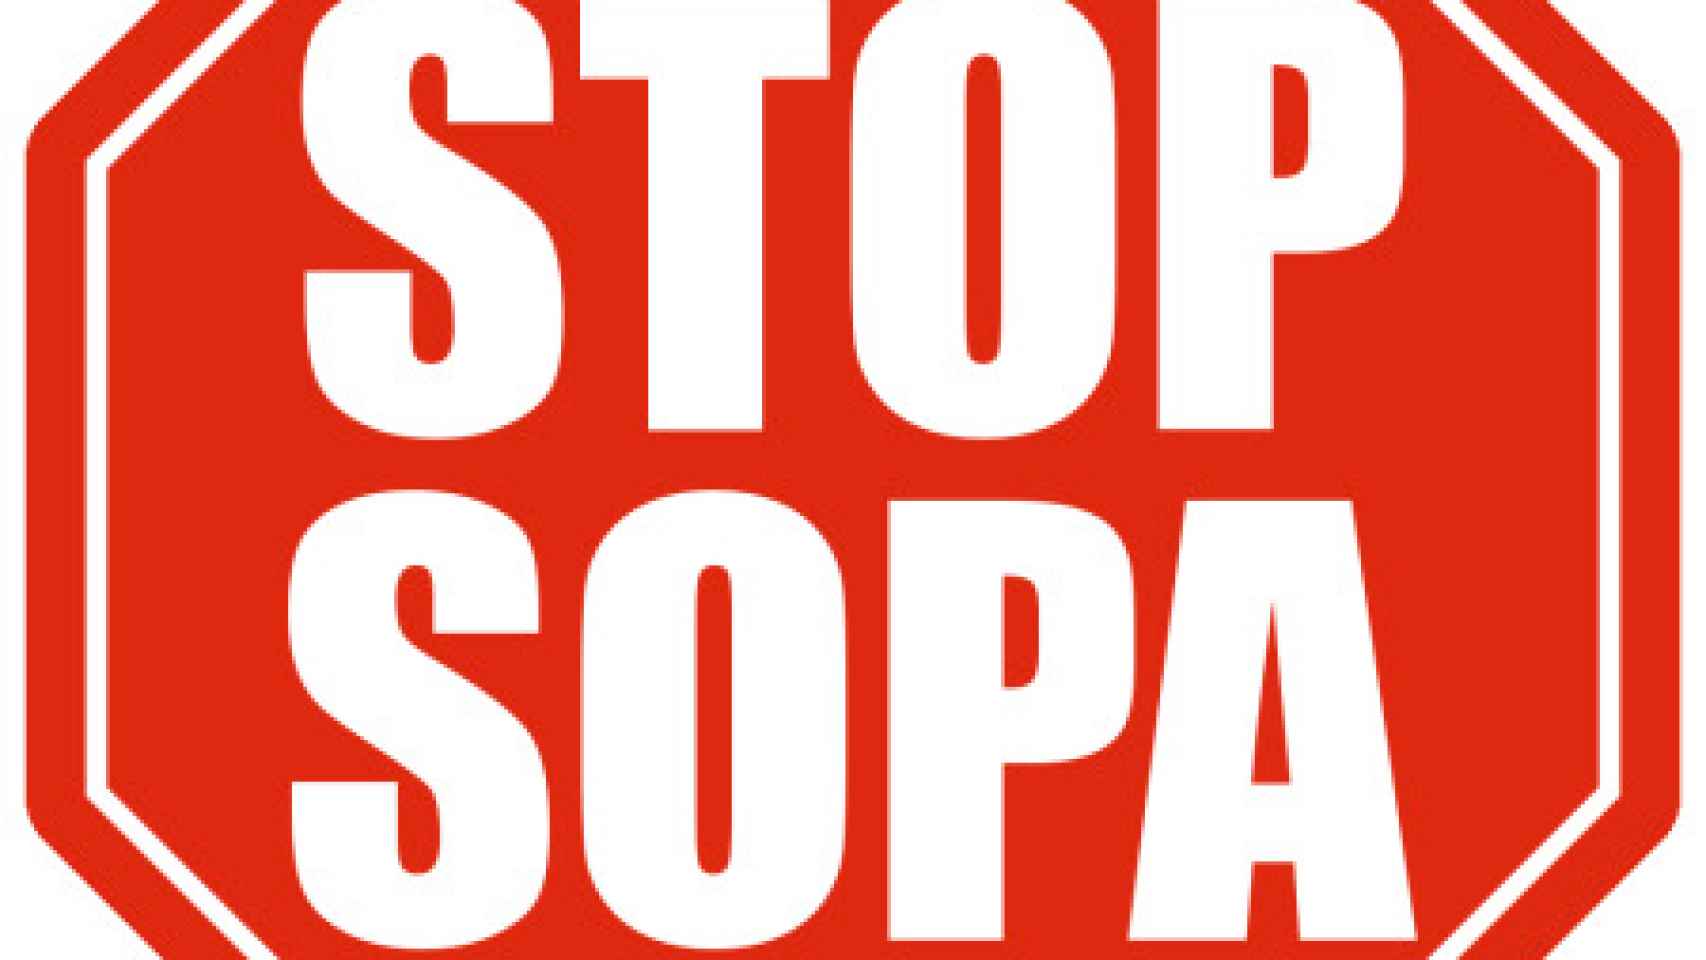 stop-sopa